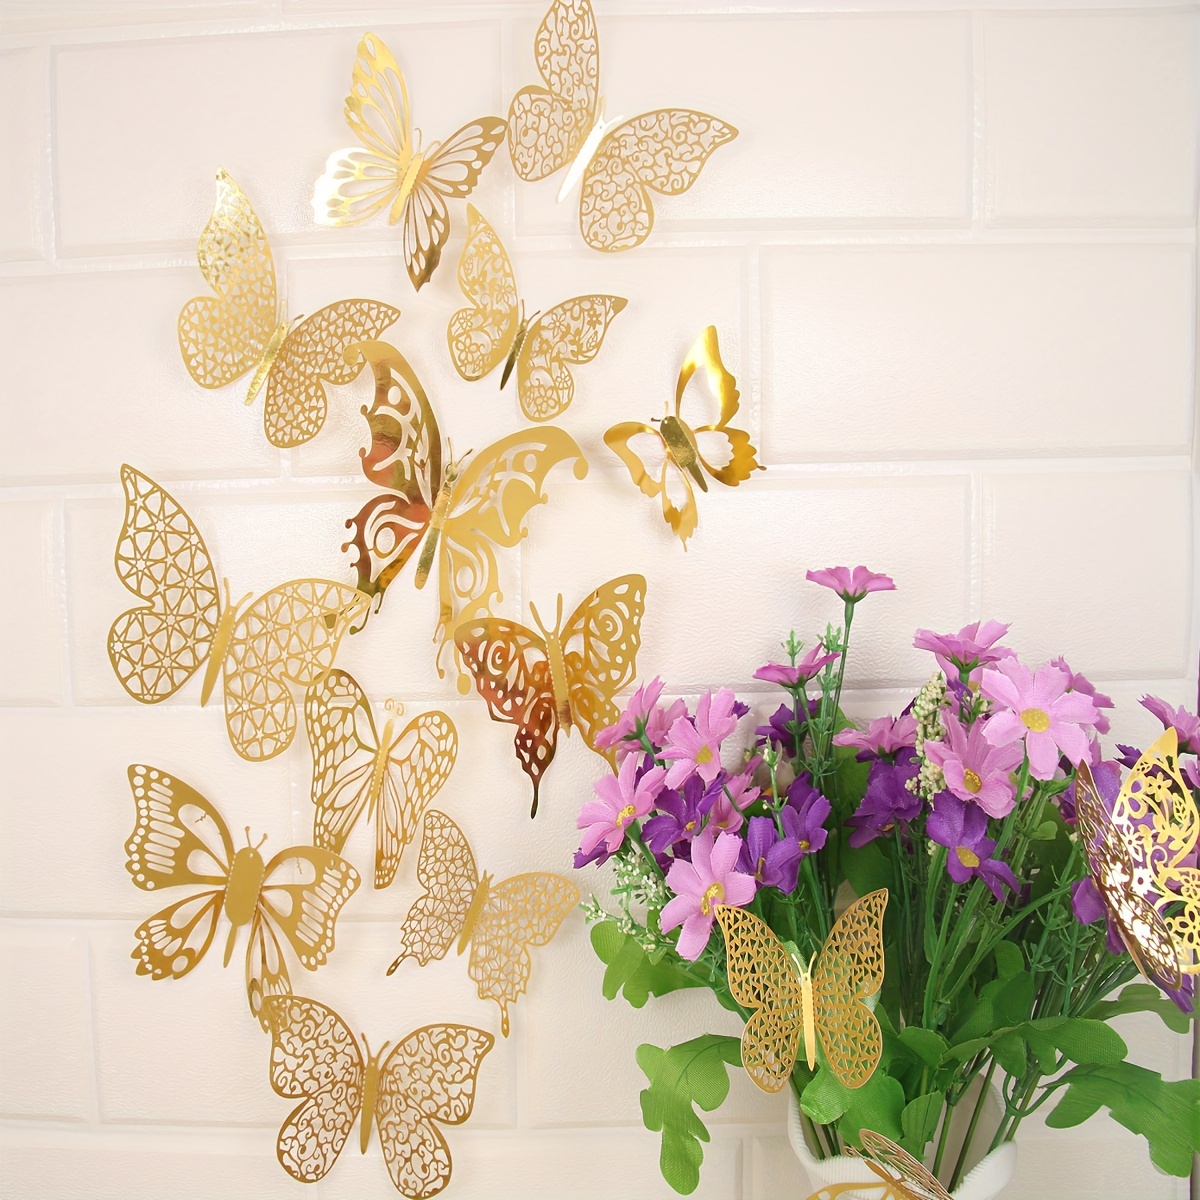 Papillons 3D Doré / 3D Butterflies - Décor mural ou décor Sweet table